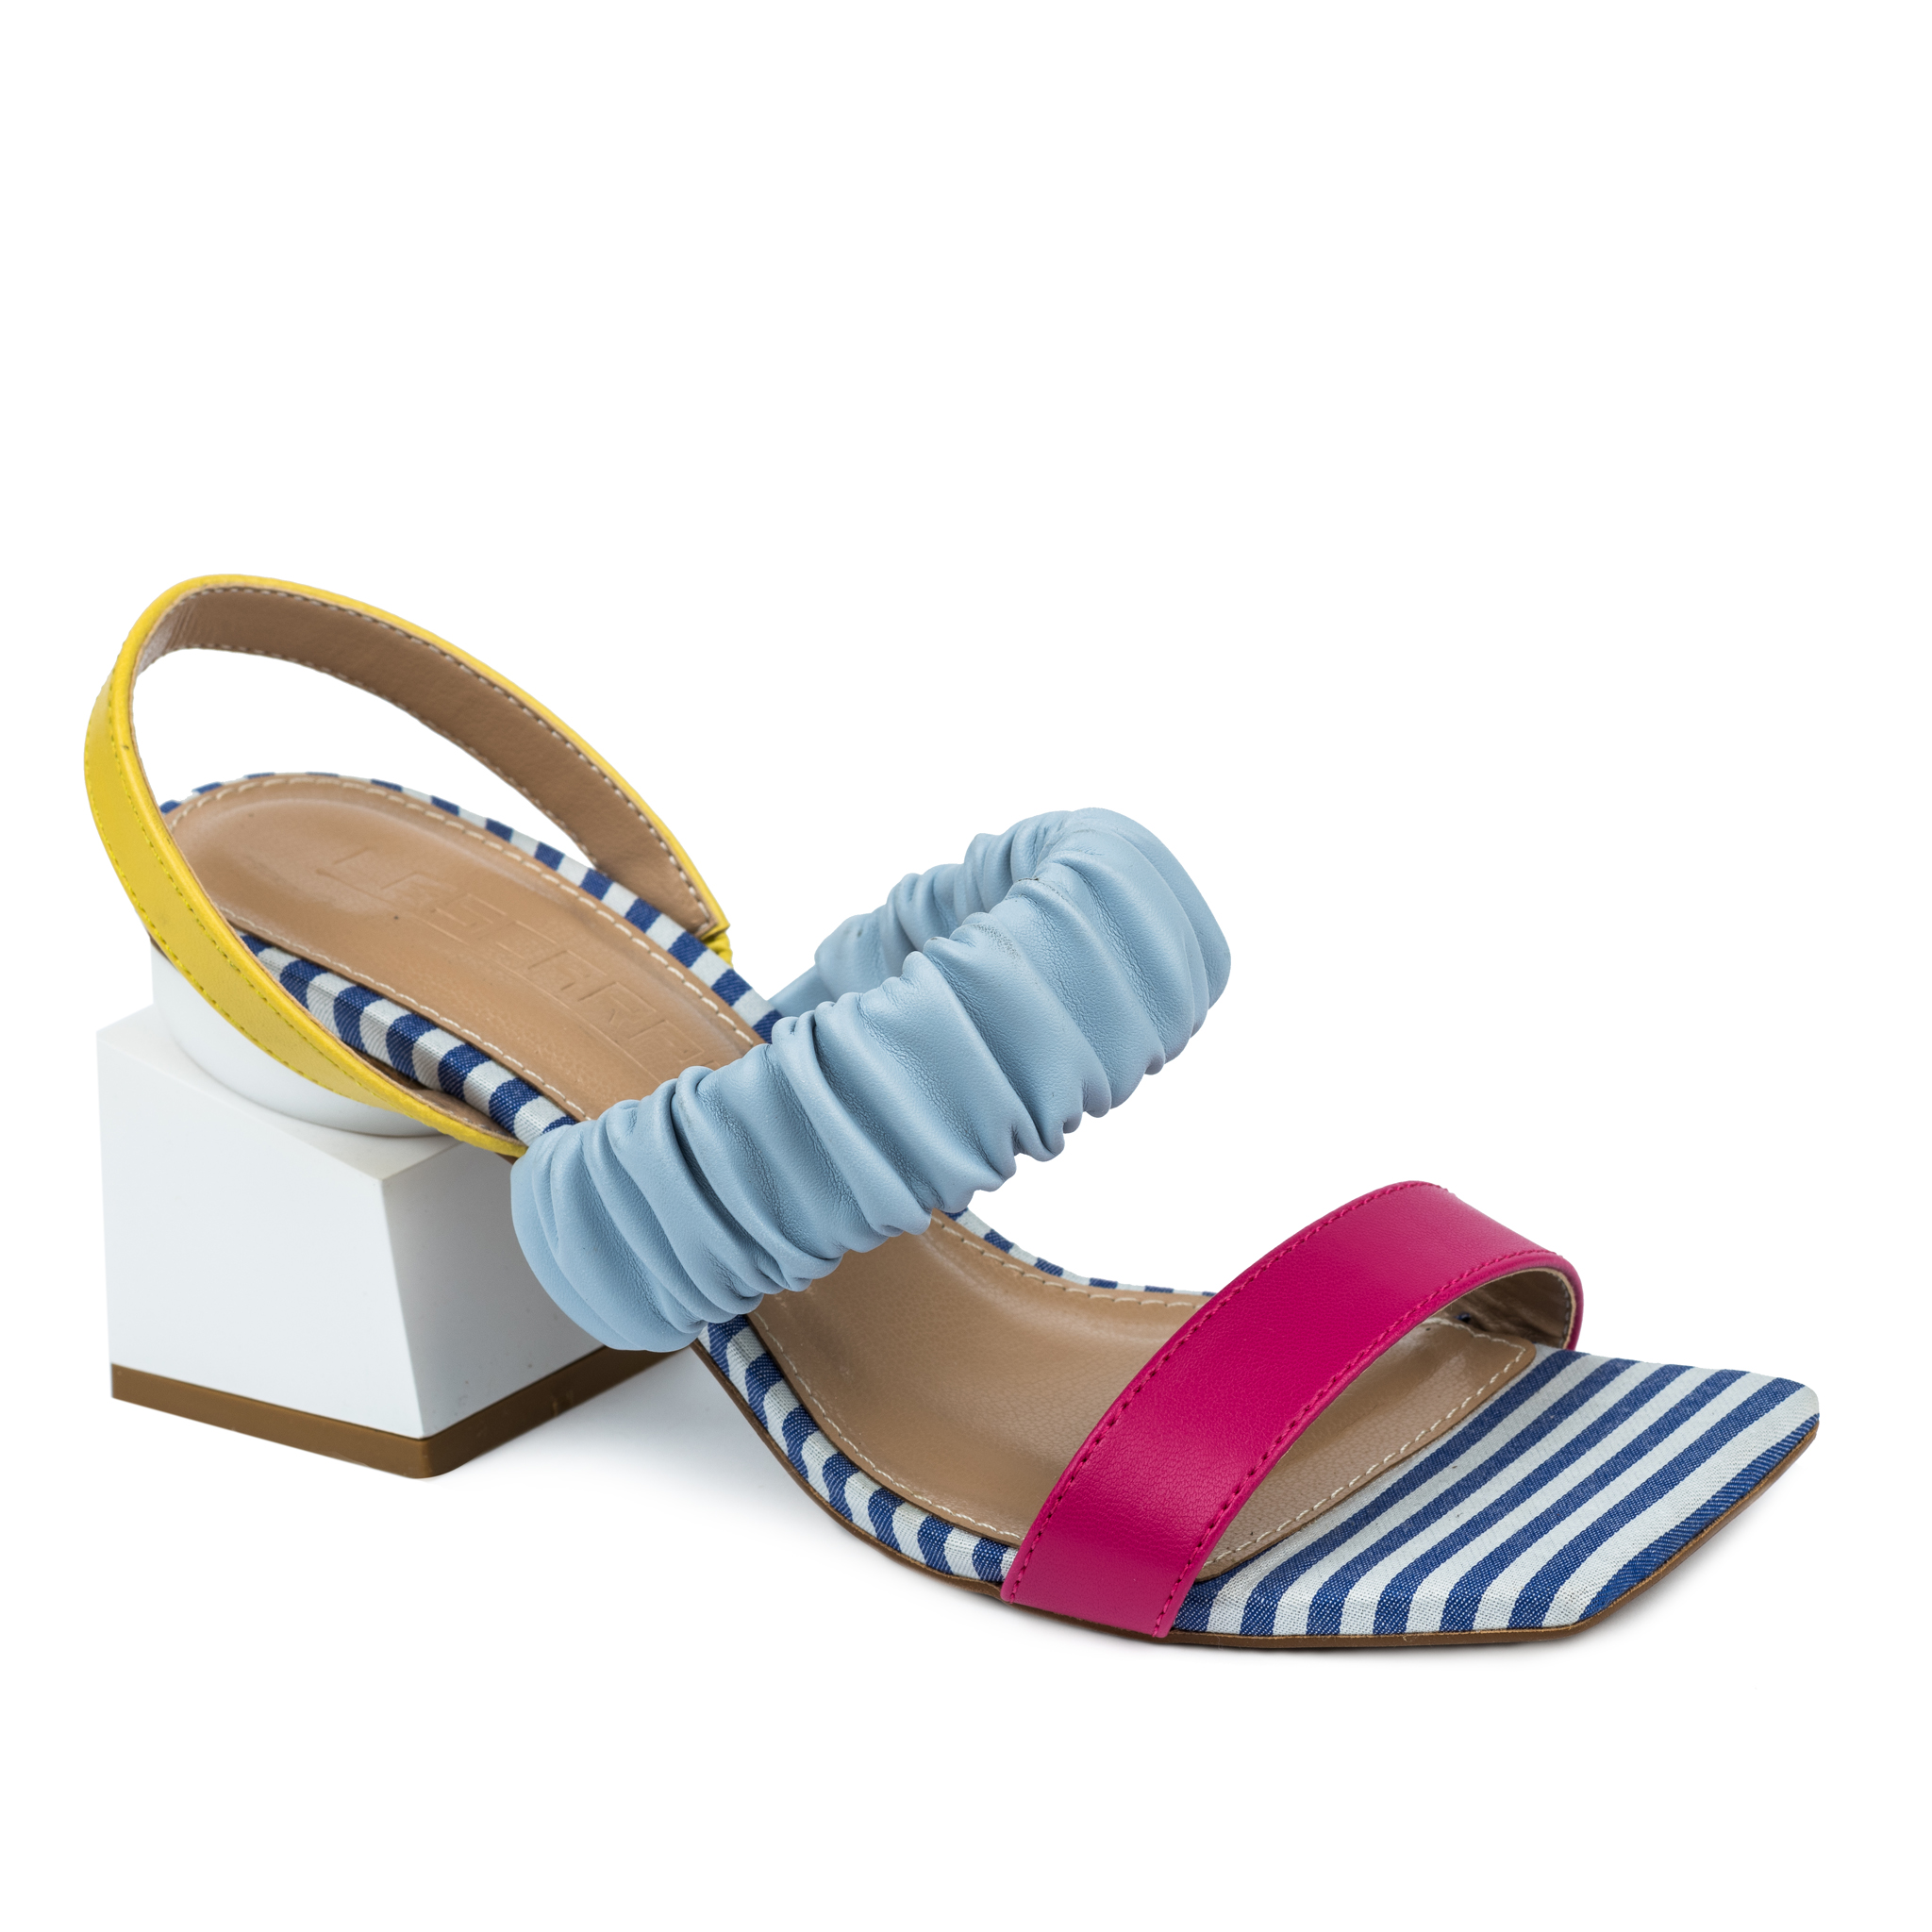 Women sandals A759 - BLUE